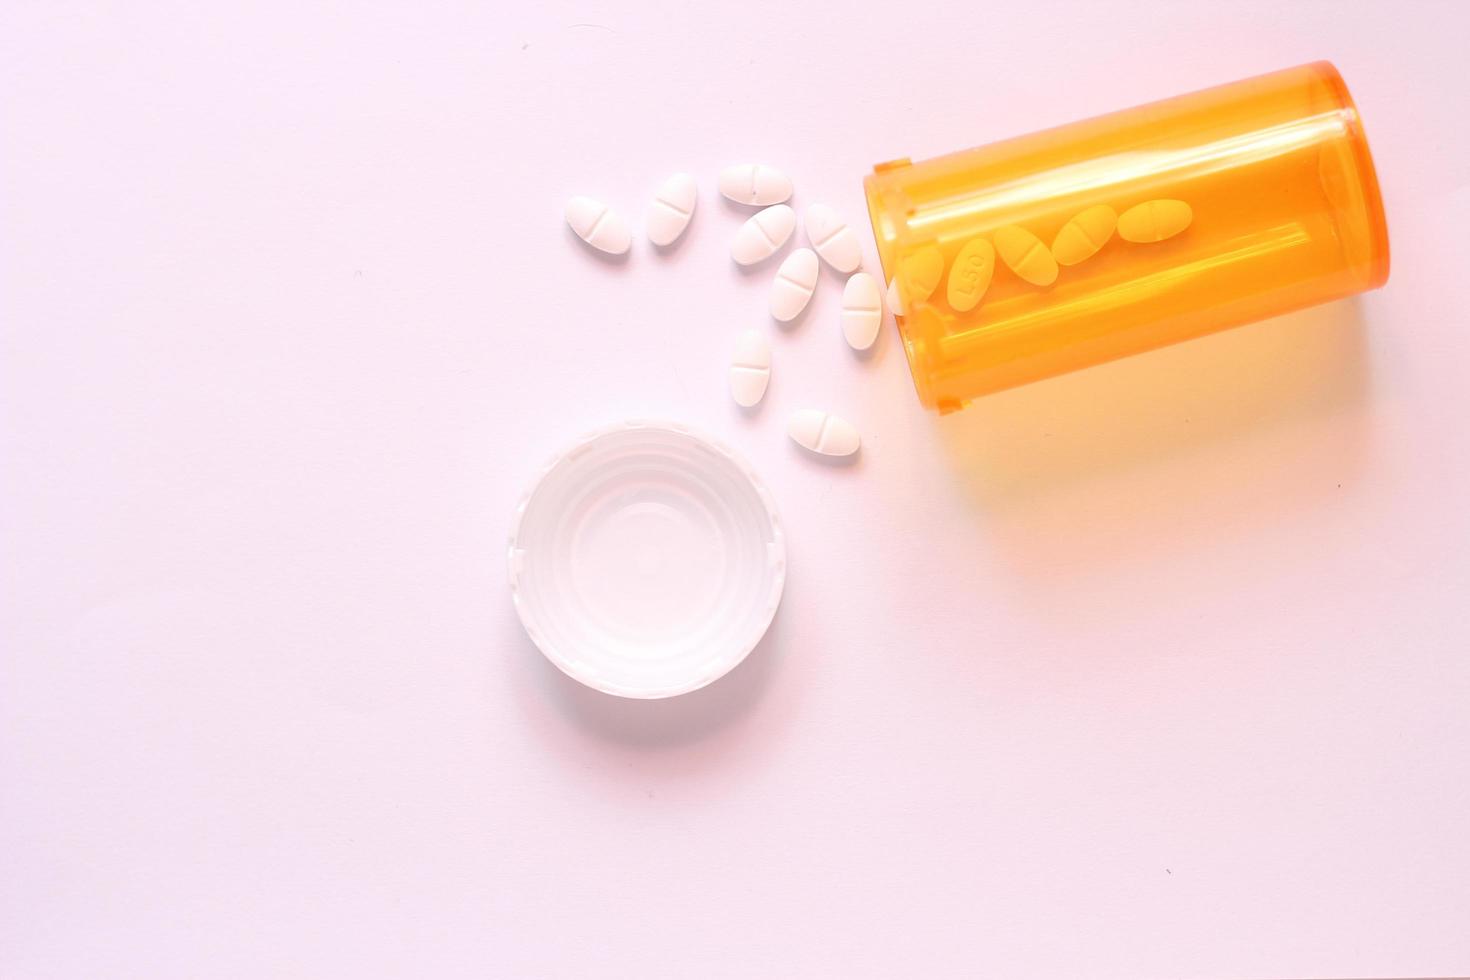 des pilules ovales et des piluliers orange étaient étalés sur la table blanche. photo